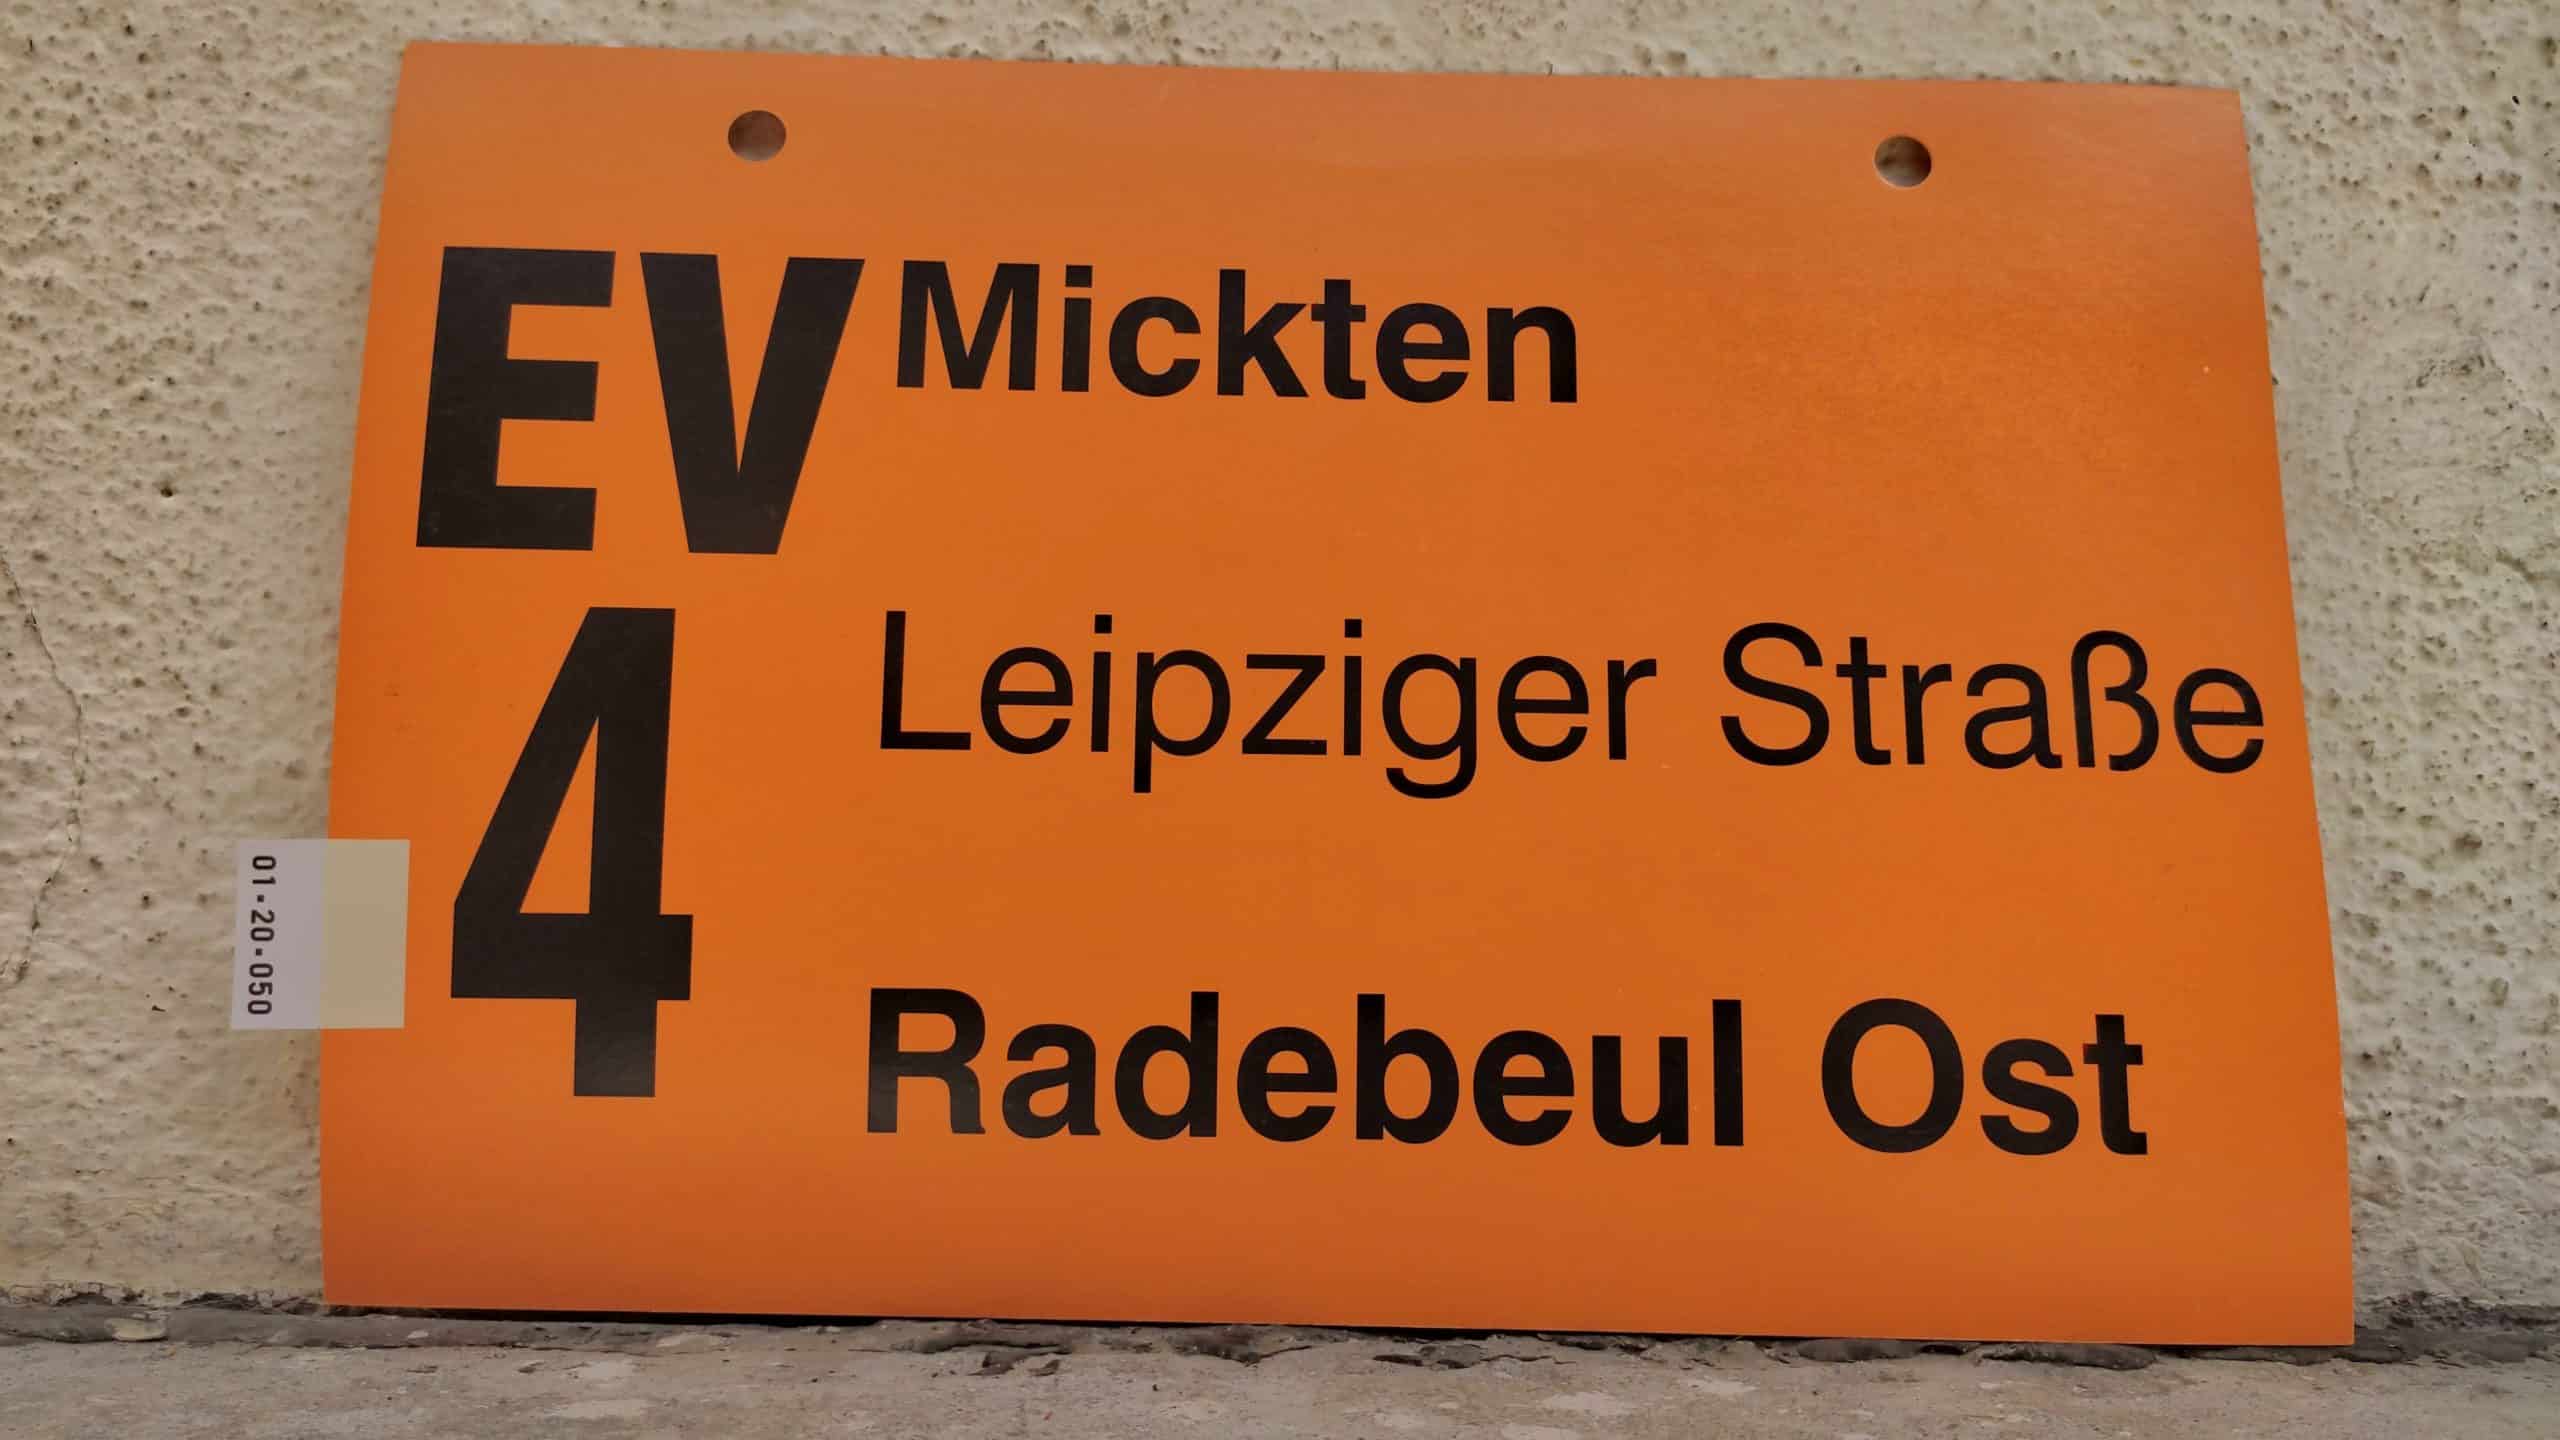 EV 4 Mickten – Radebeul Ost